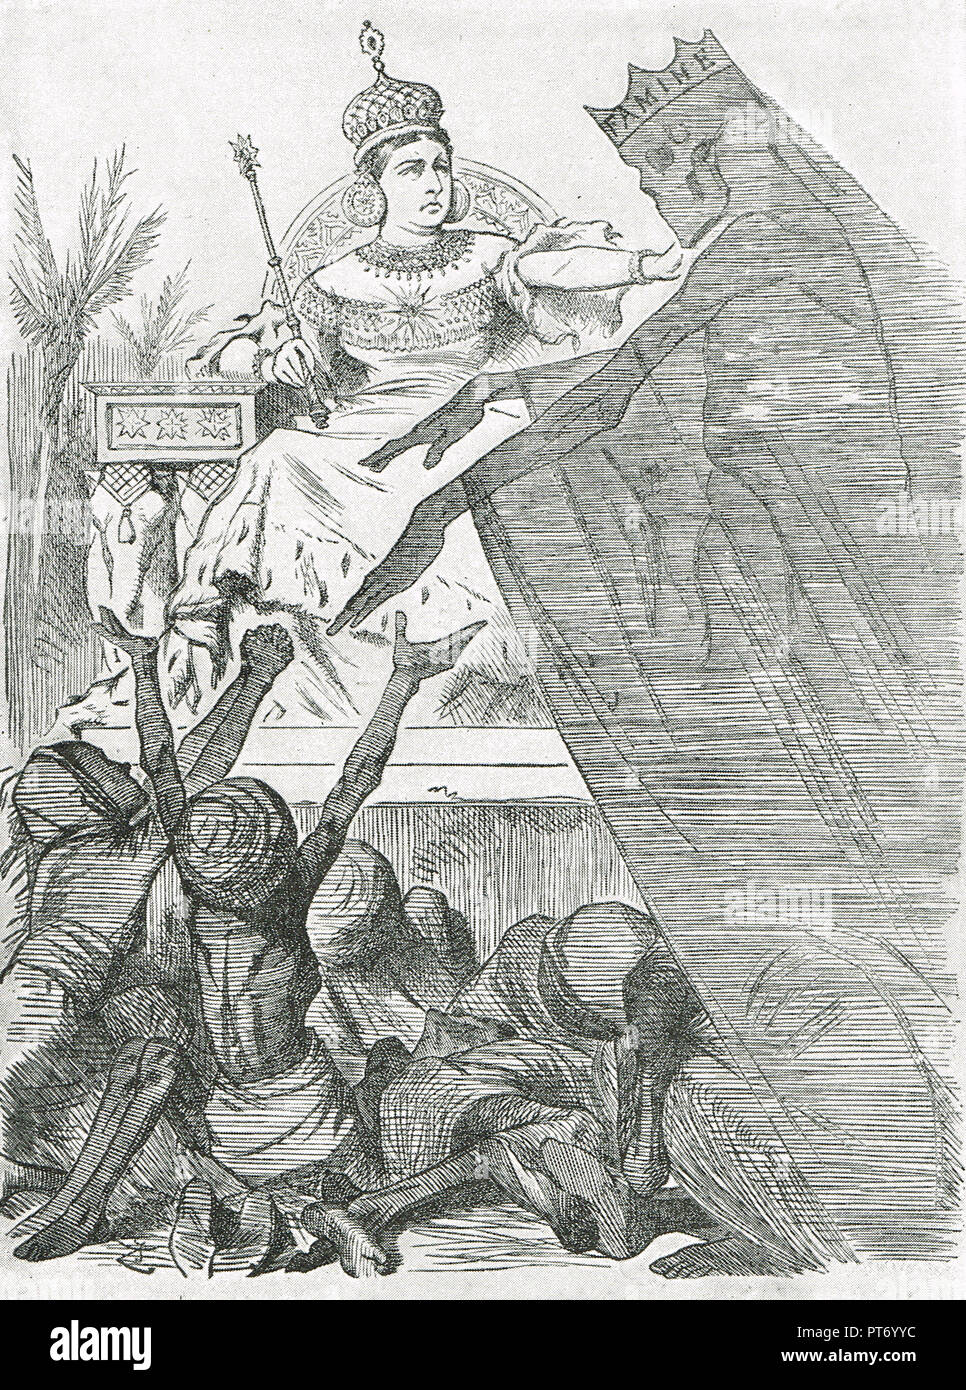 Punch cartoon da John Tenniel, intitolato contestato impero. Un commento sulla carestia indiana di 1876-78 in cui circa 5,5 milioni di suoi soggetti sono morti dopo che aveva assunto il titolo di Imperatrice dell India. Foto Stock